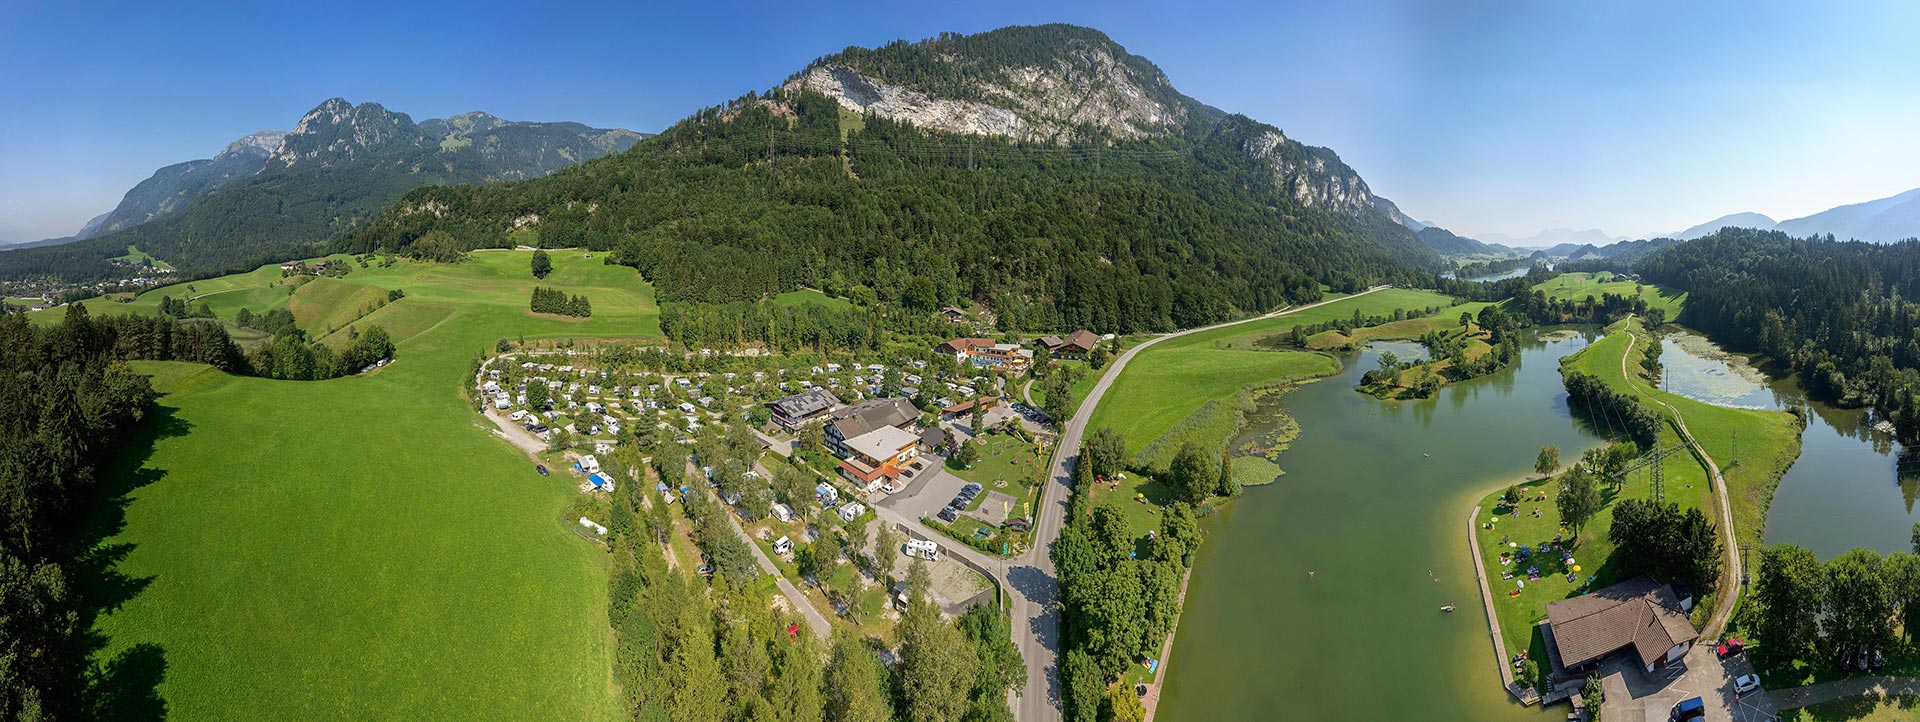 Camping Stadlerhof - wakacje u rodziny Sappl u podnóży Alp – główne zdjęcie